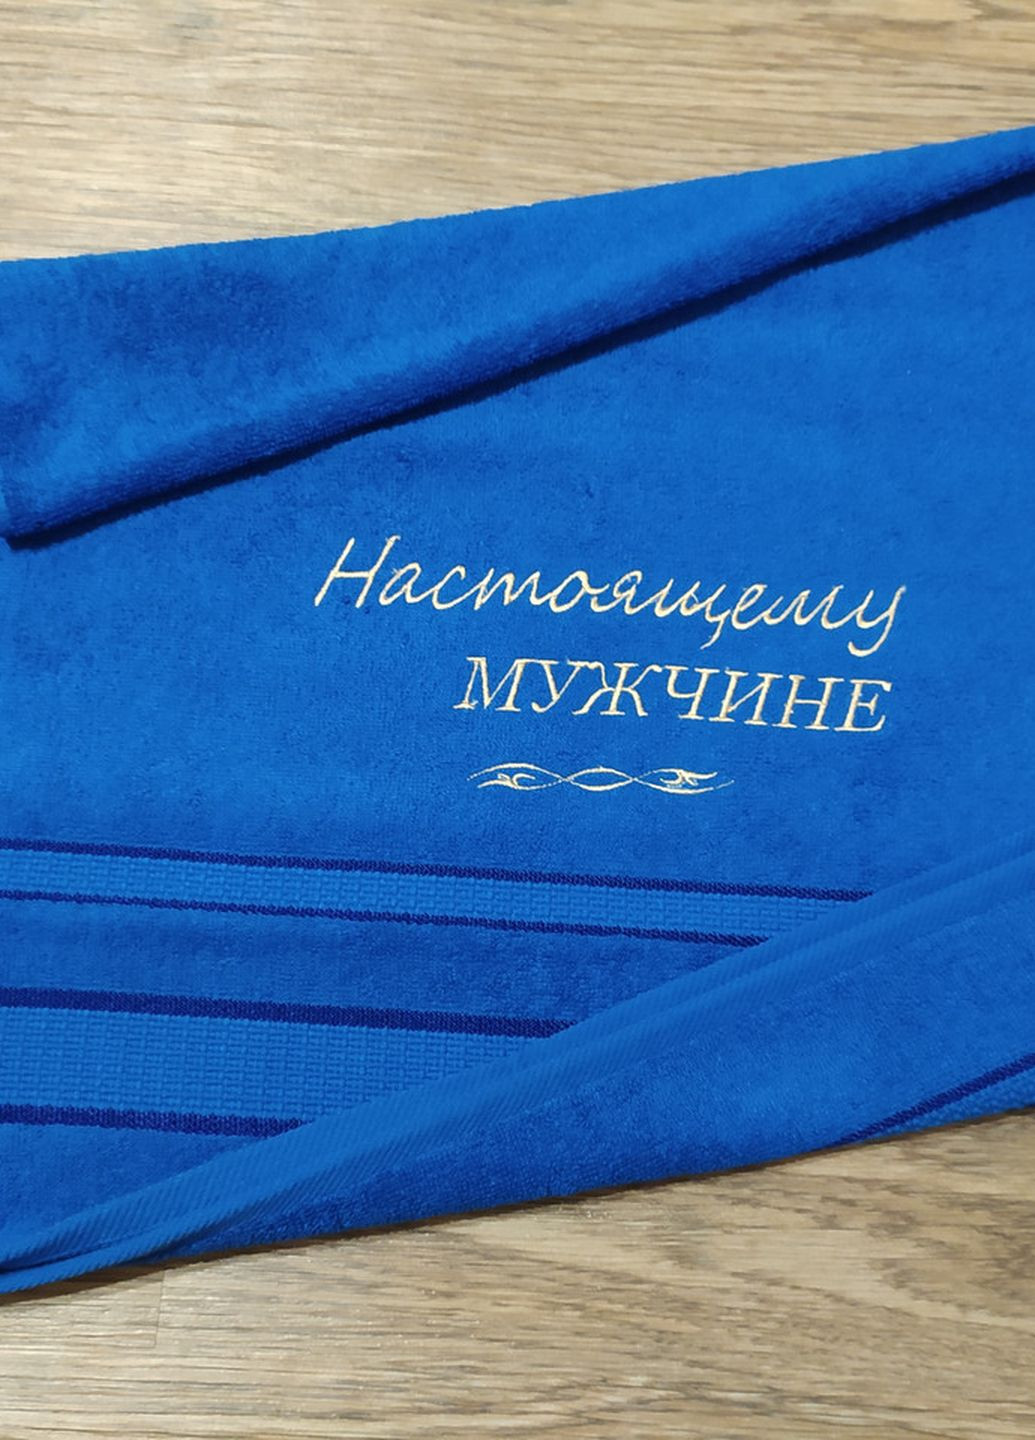 No Brand полотенце c вышивкой махровое лицевое 50*90 синий настоящему мужчине 00254 однотонный синий производство - Украина